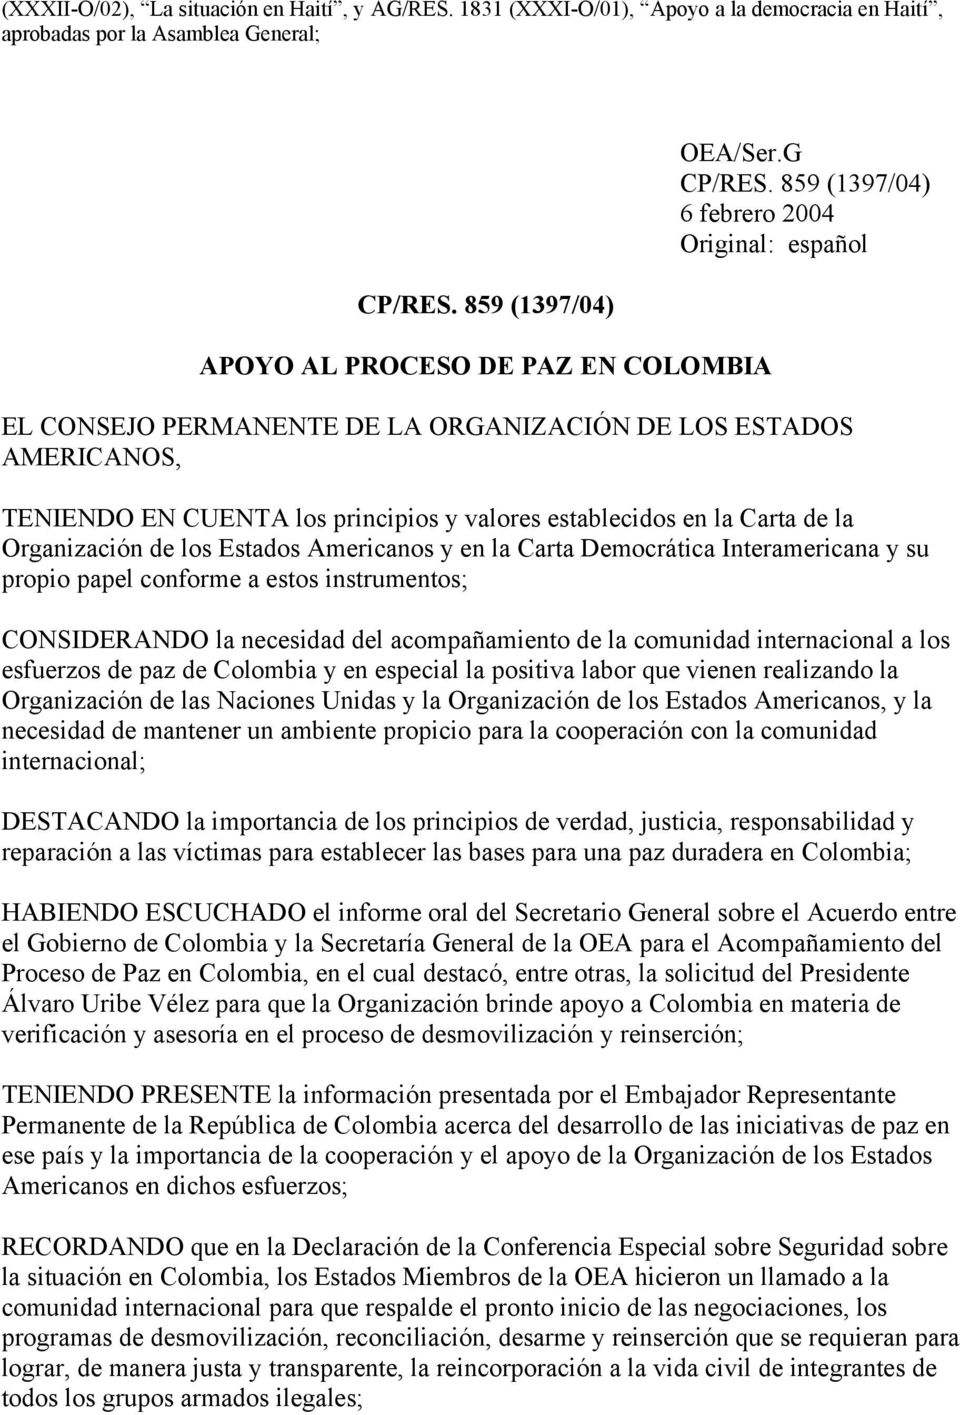 859 (1397/04) 6 febrero 2004 Original: español EL CONSEJO PERMANENTE DE LA ORGANIZACIÓN DE LOS ESTADOS AMERICANOS, TENIENDO EN CUENTA los principios y valores establecidos en la Carta de la